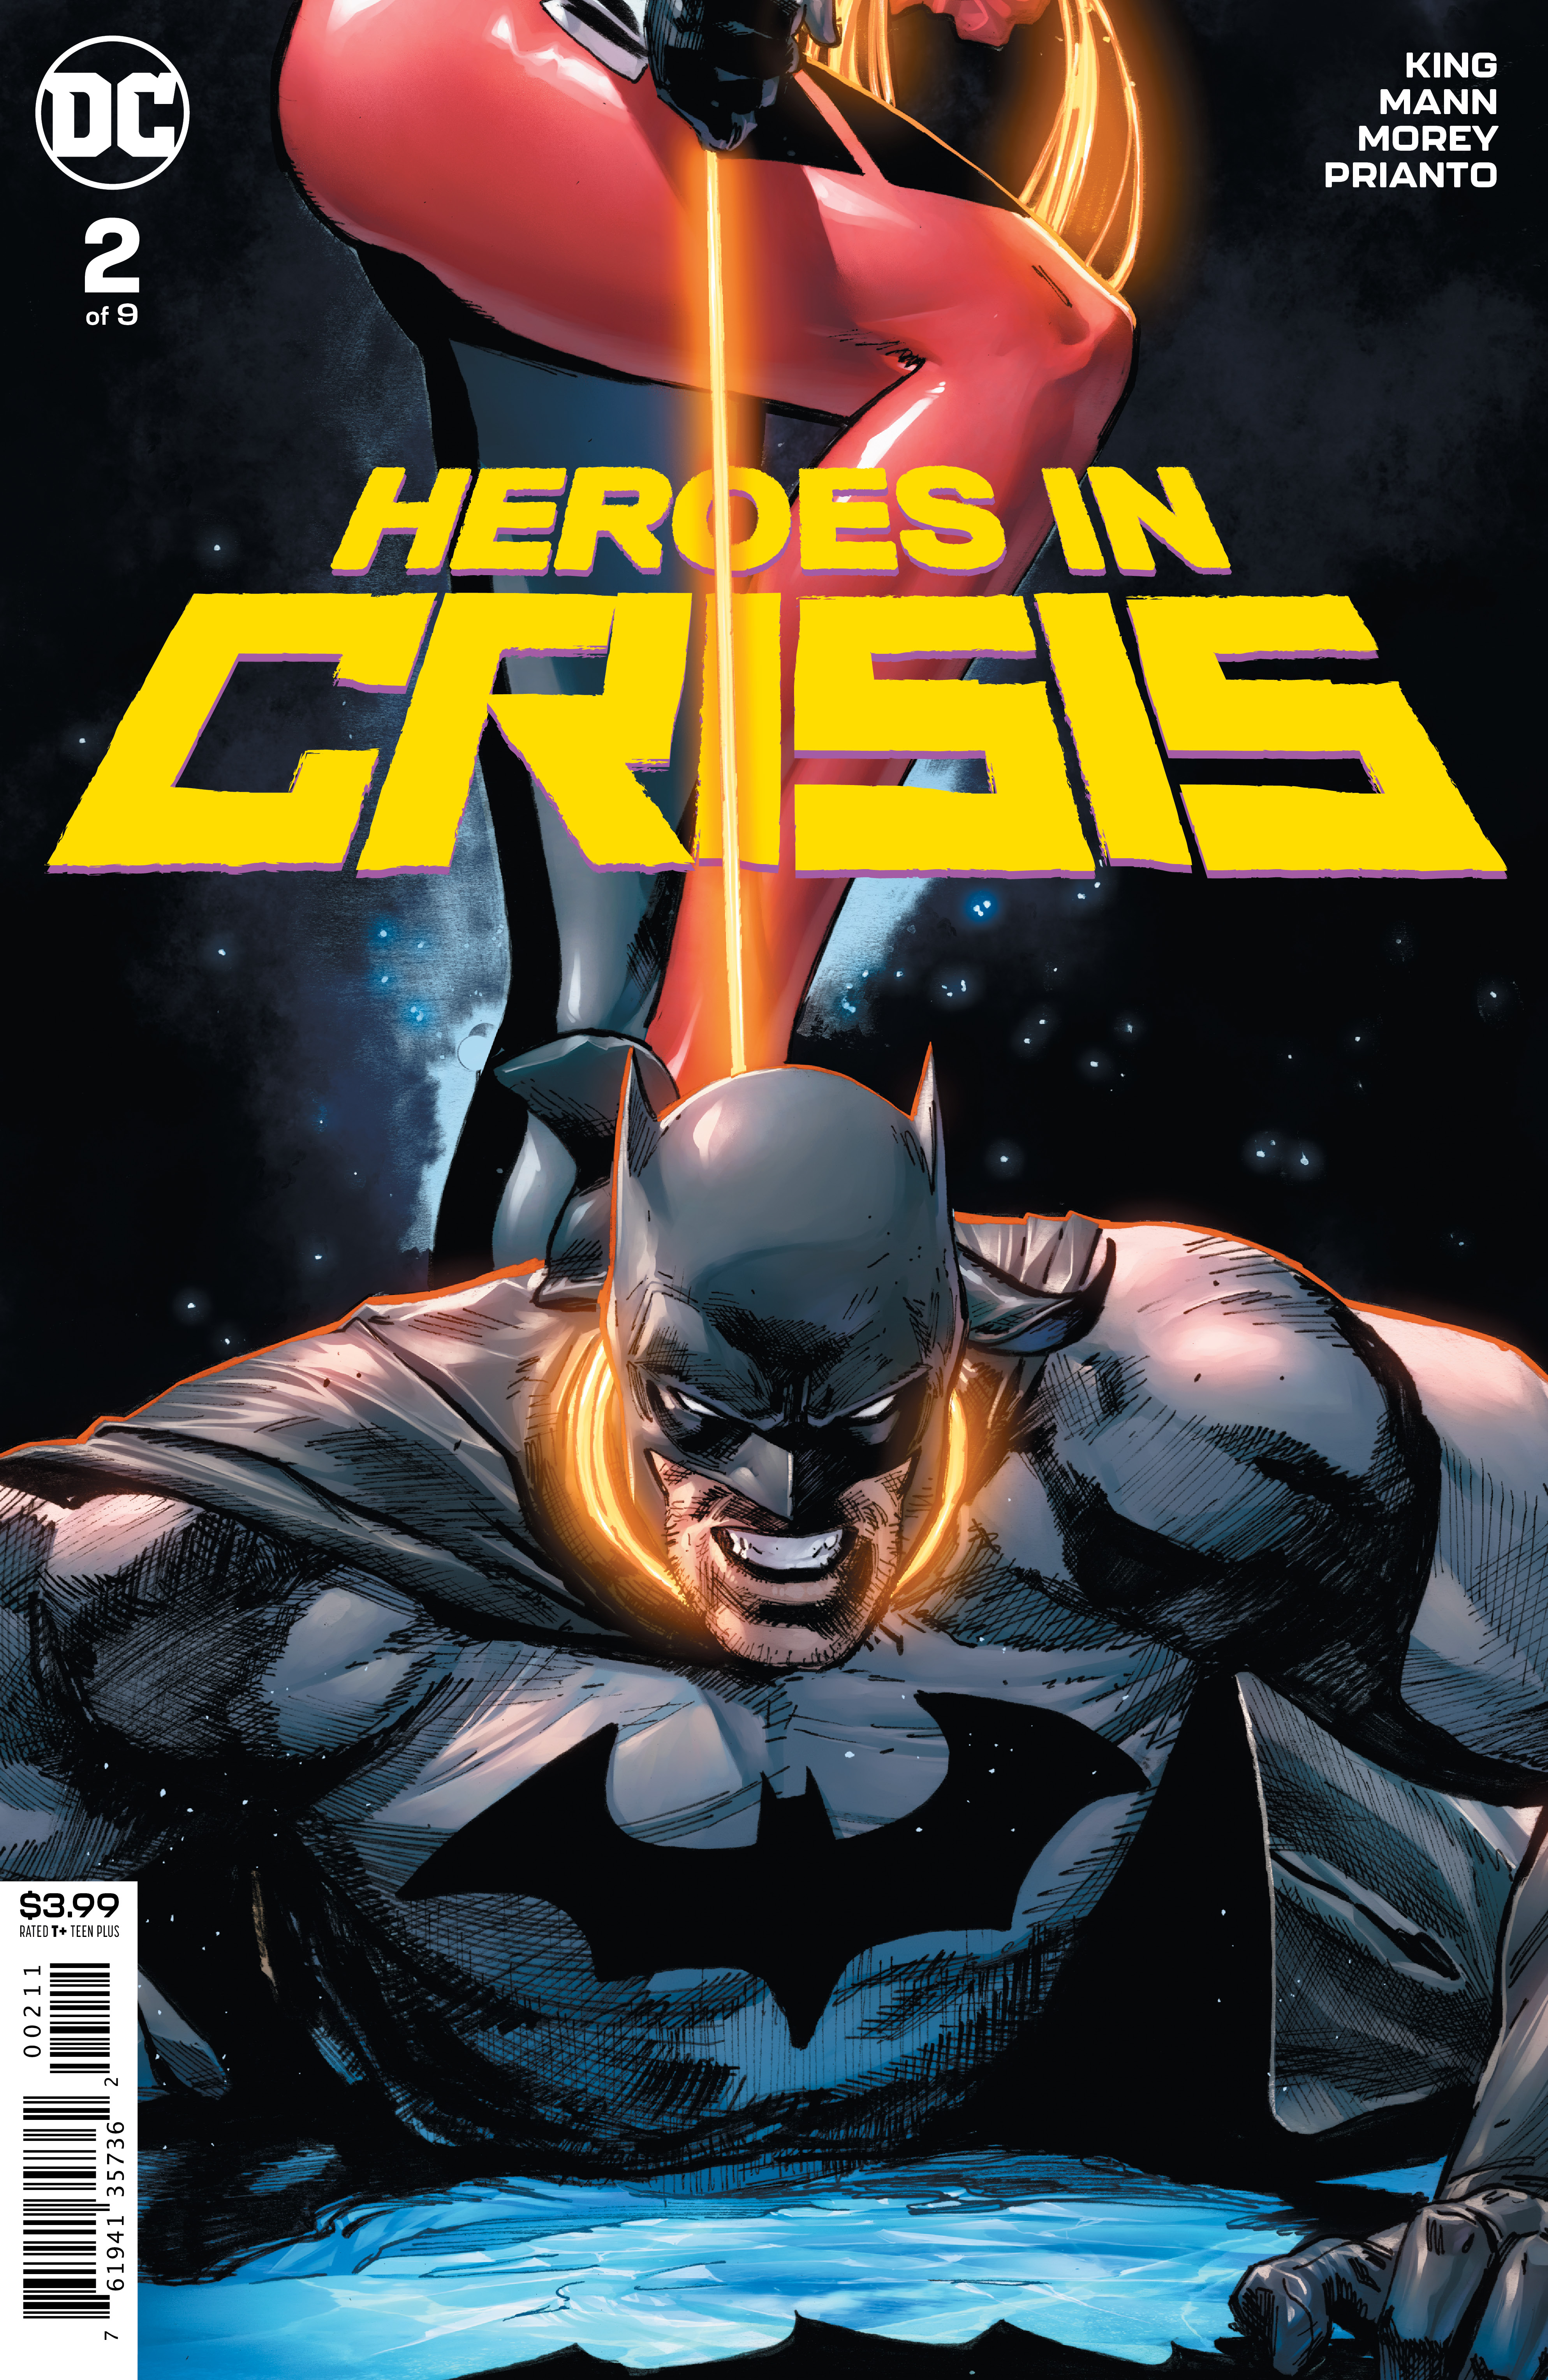 HEROES IN CRISIS #2 (OF 9)